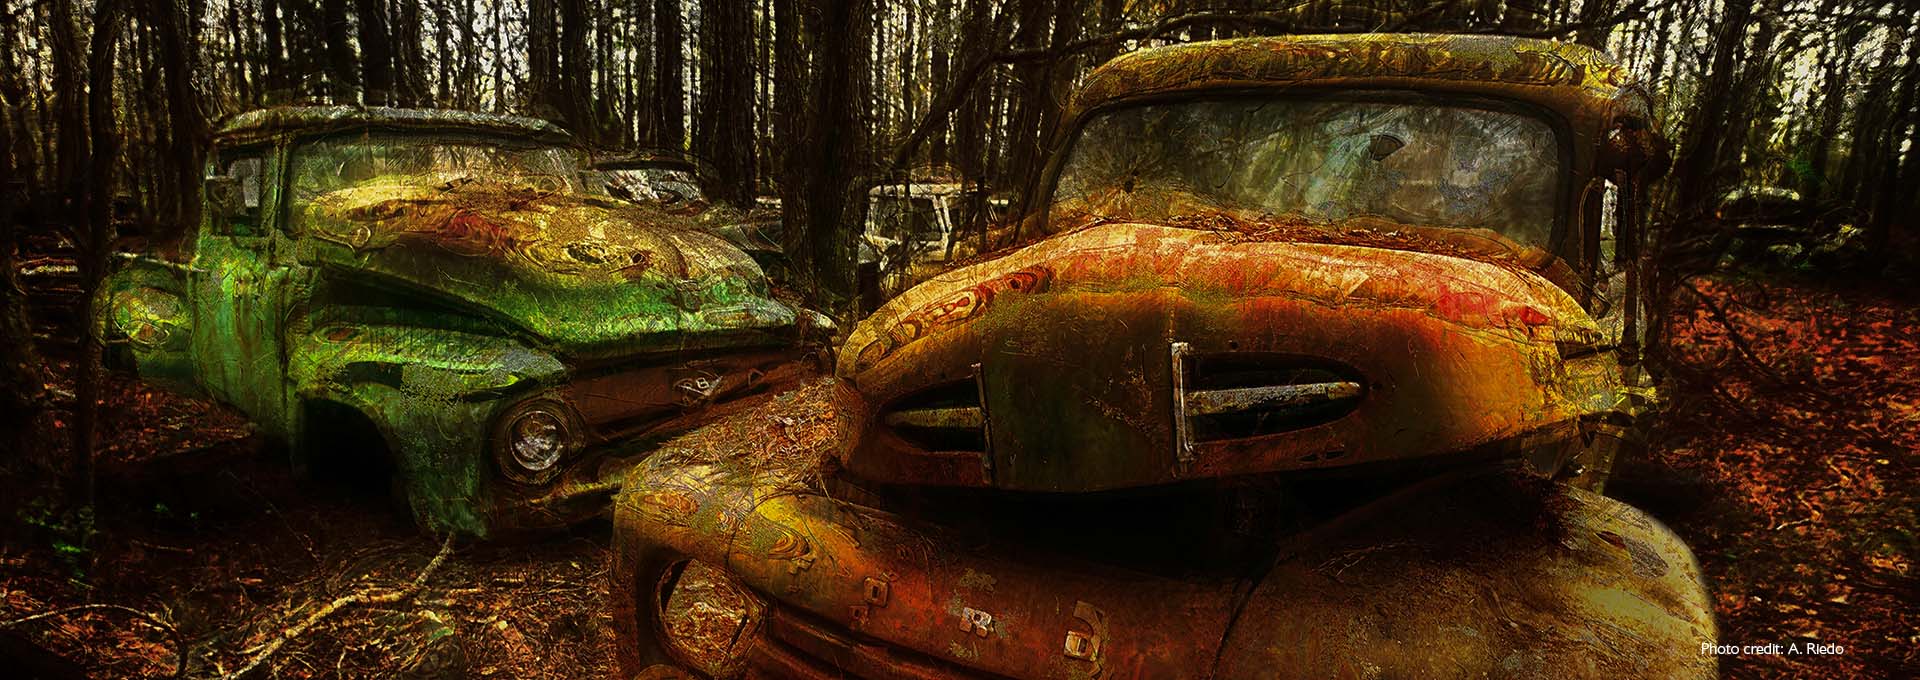 Bernafon Alpha işitme cihazı kullanıcıları tarafından fotoğraflanan, ormanın ortasında bir araba mezarlığındaki paslı, yeşil ve kahverengi iki eski arabanın görüntüsü